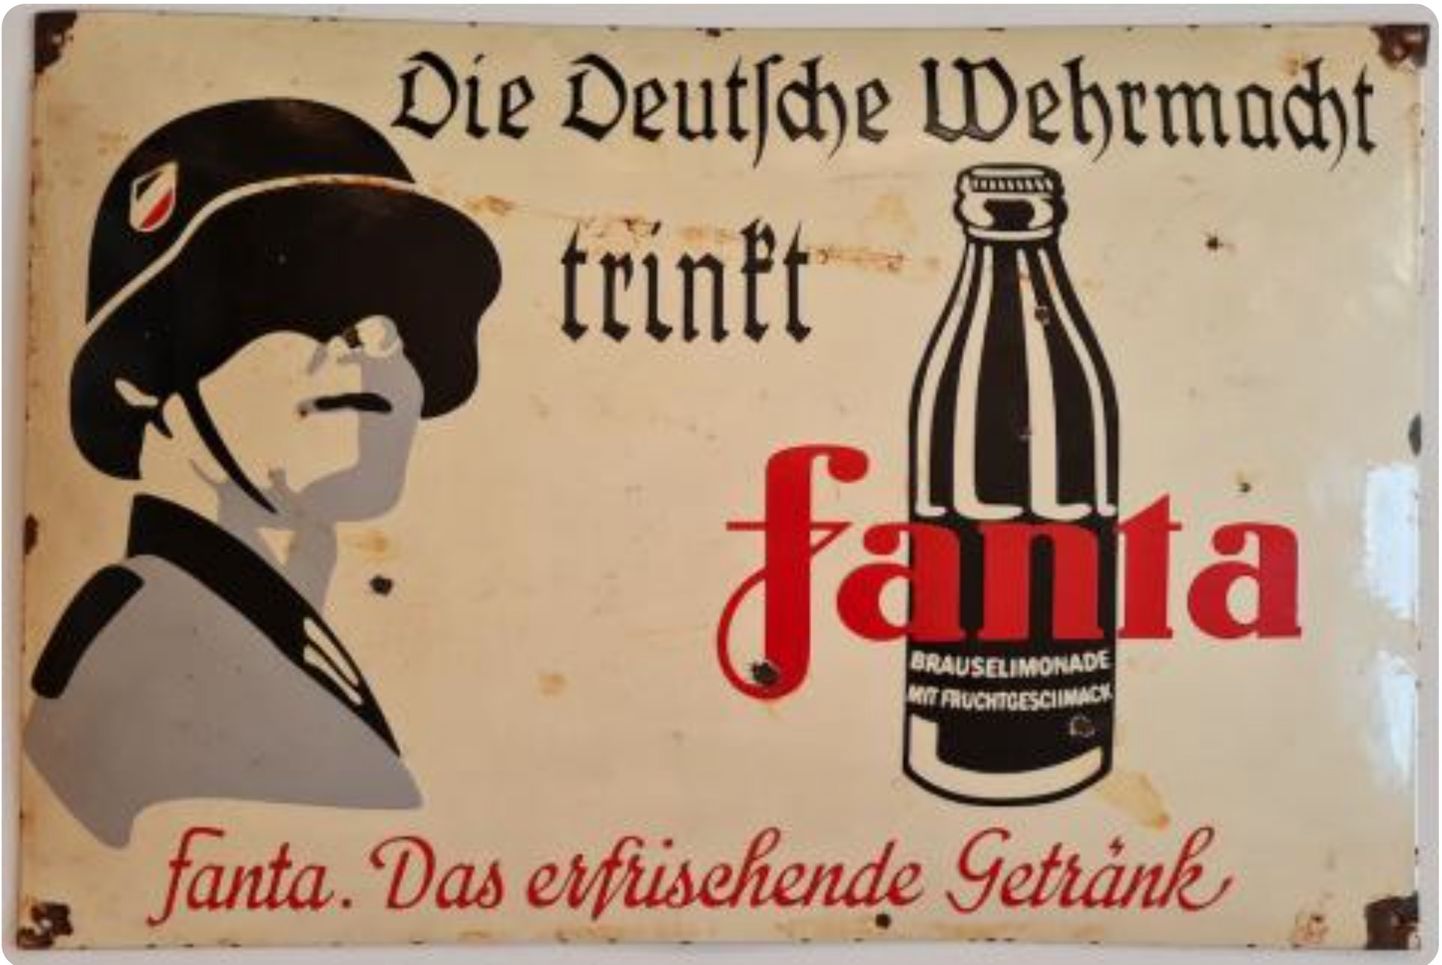 Teise maailmasõja ajal olid USA kaupadel Saksa vedamisel peal keeld. Samas – Coca Cola töötas saksamaal edasi ja siis leiutatatigi aseaine Fanta. Pärast sõja lõppu jätkas Saksa Coca Cola Ühndriikide juhtimise all, nagu midagi poleks juhtunudki. Fanta muutus kontserini tooteks. Fotol erakolektsioonis müügil olenud metall-alusel email silt tatab, et Saksa Wehrmacht joob Fantat, mis on värskendav jook.